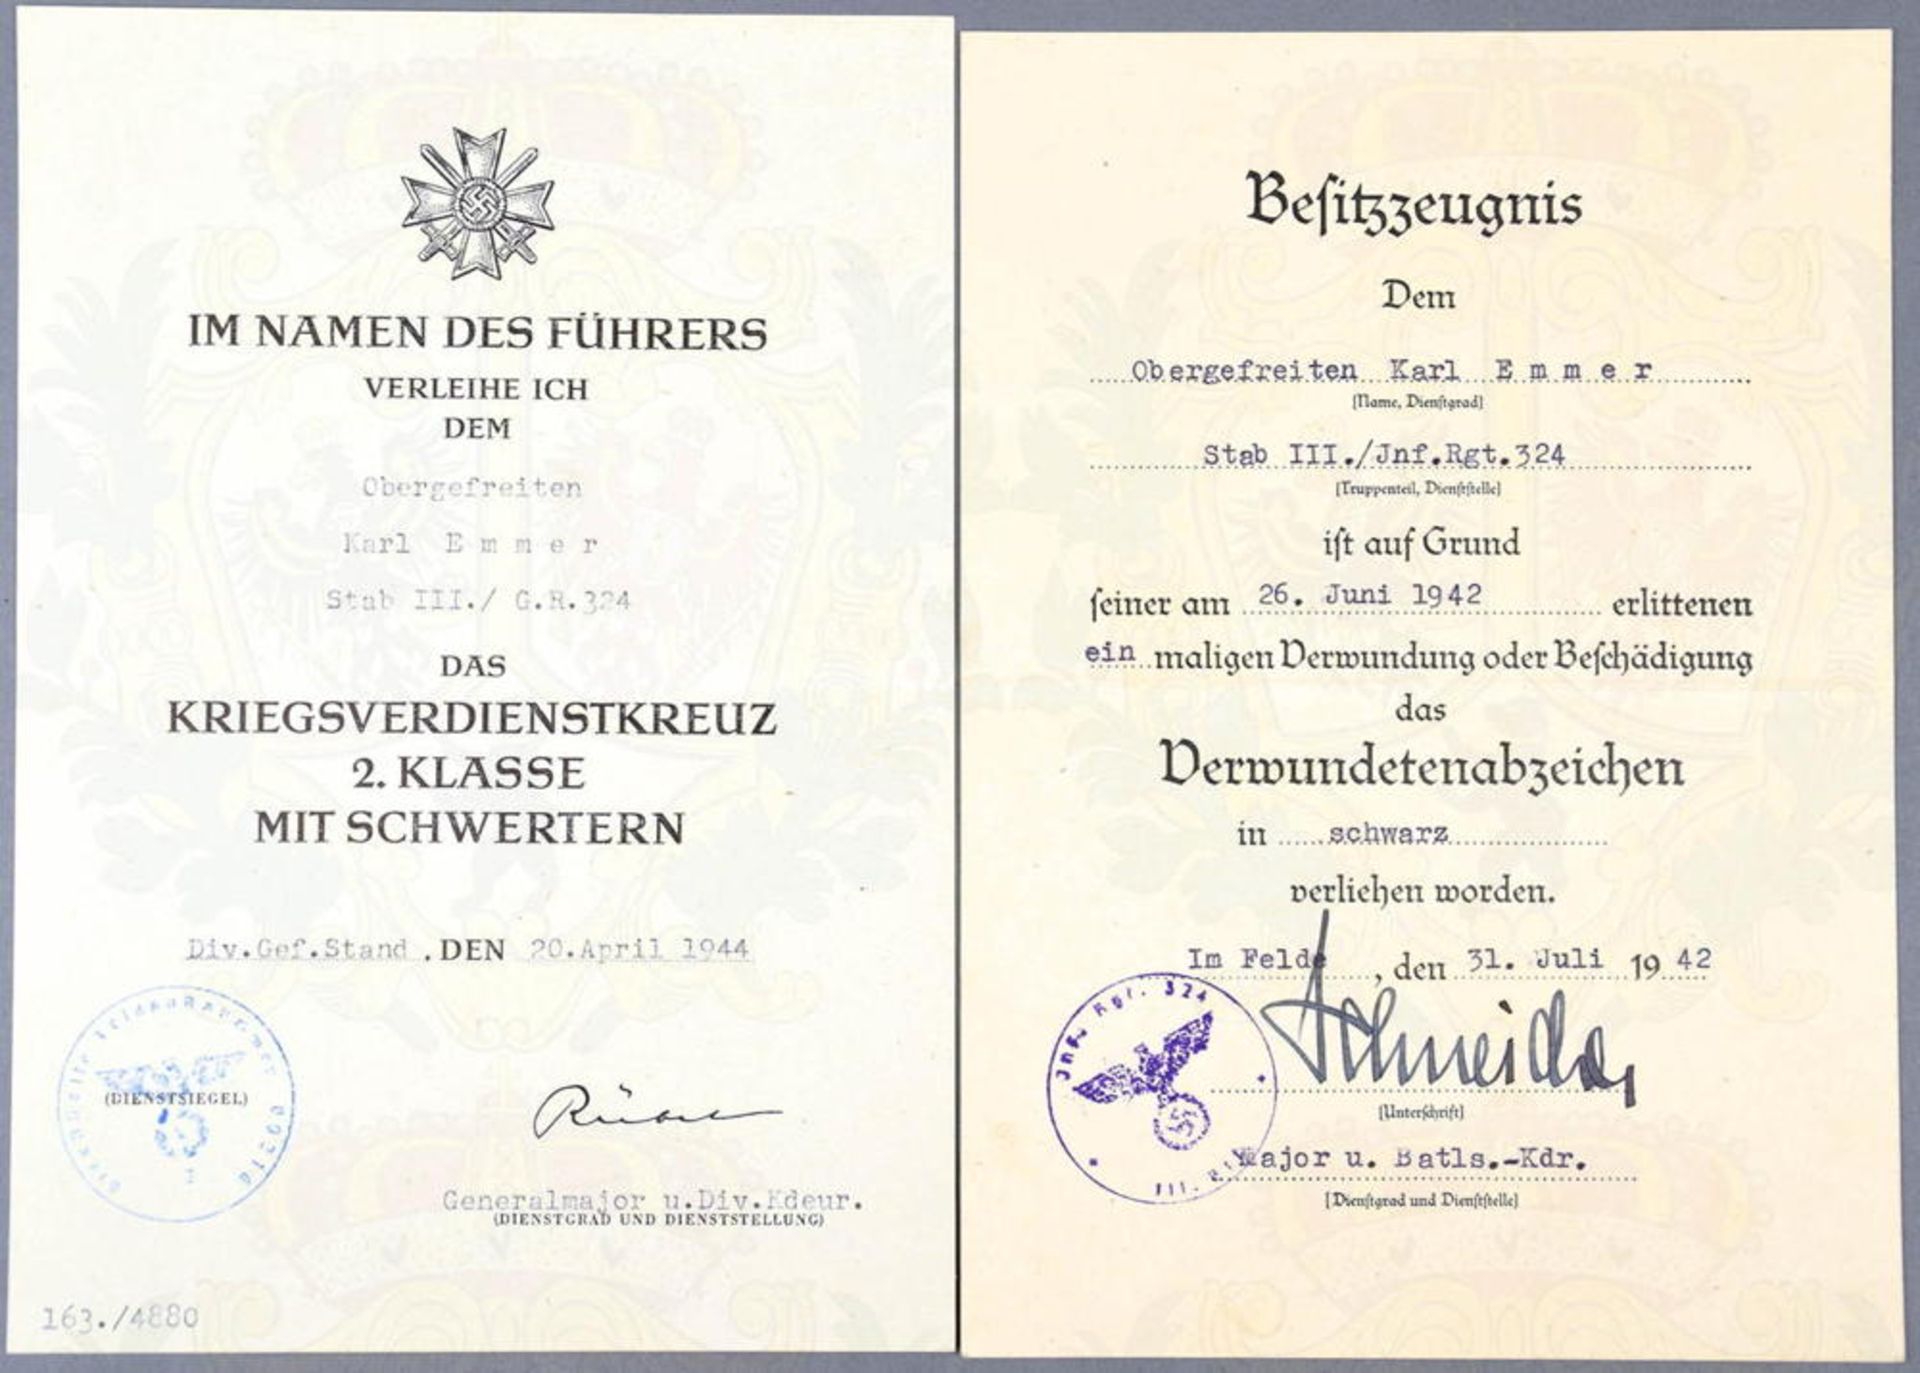 URKUNDENGRUPPE OBERGEFREITER, Inf.-Rgt. 324: VU Verwundetenabzeichen in Schwarz, 31.7.1942,